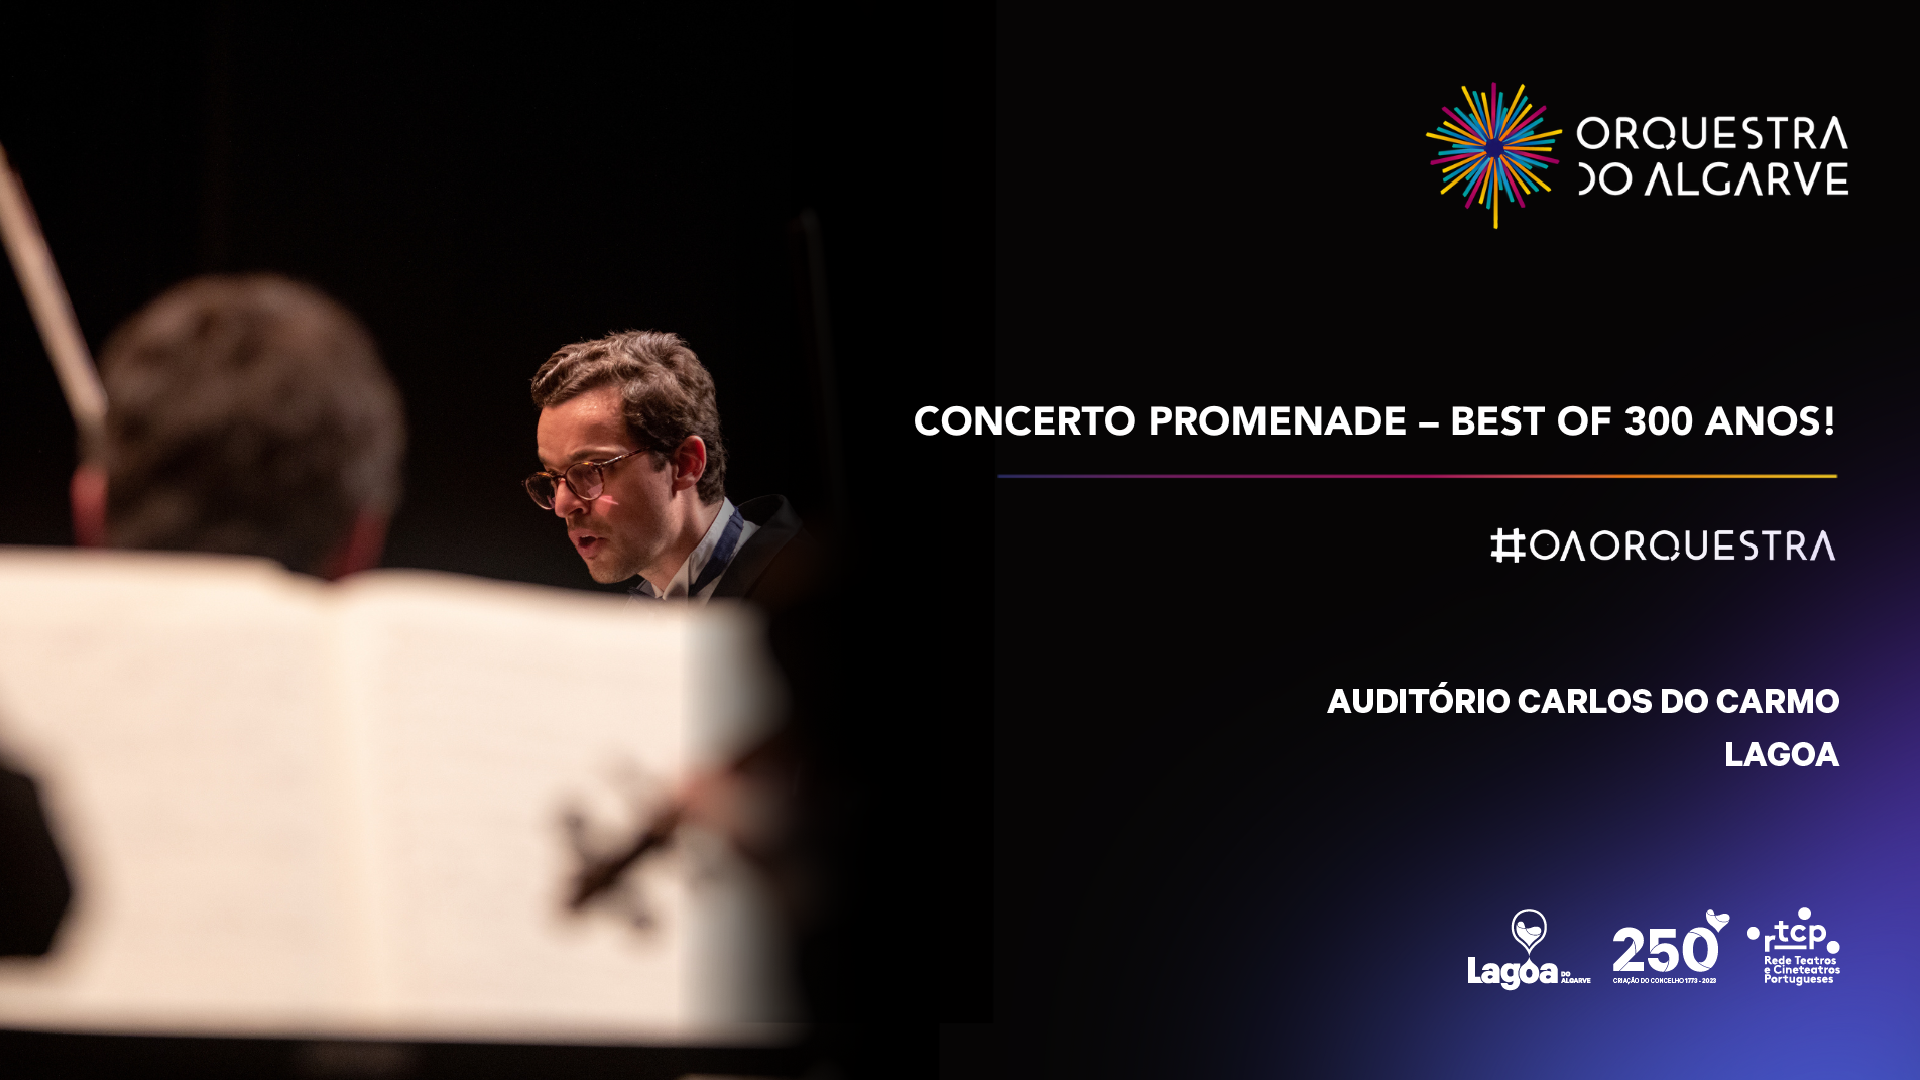 Concerto Promenade | "Best Of 300 Anos!"